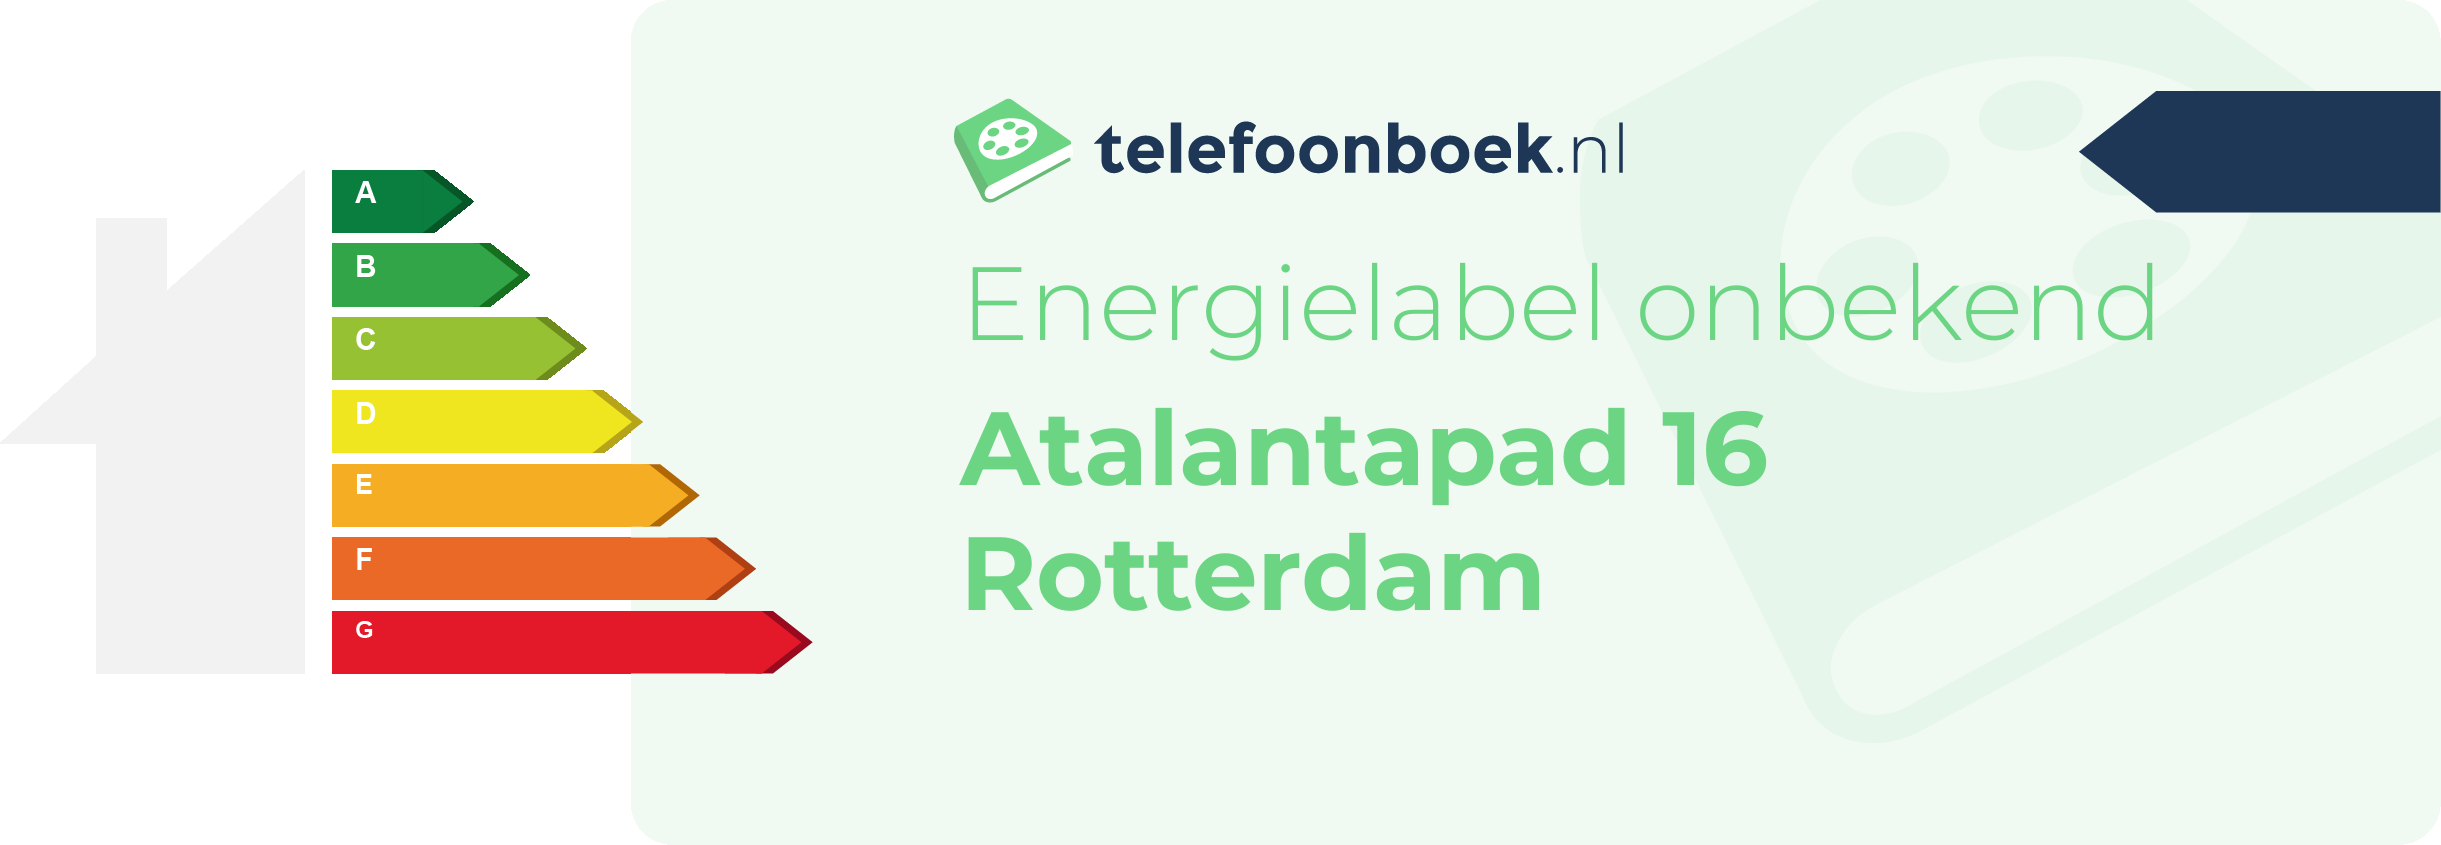 Energielabel Atalantapad 16 Rotterdam